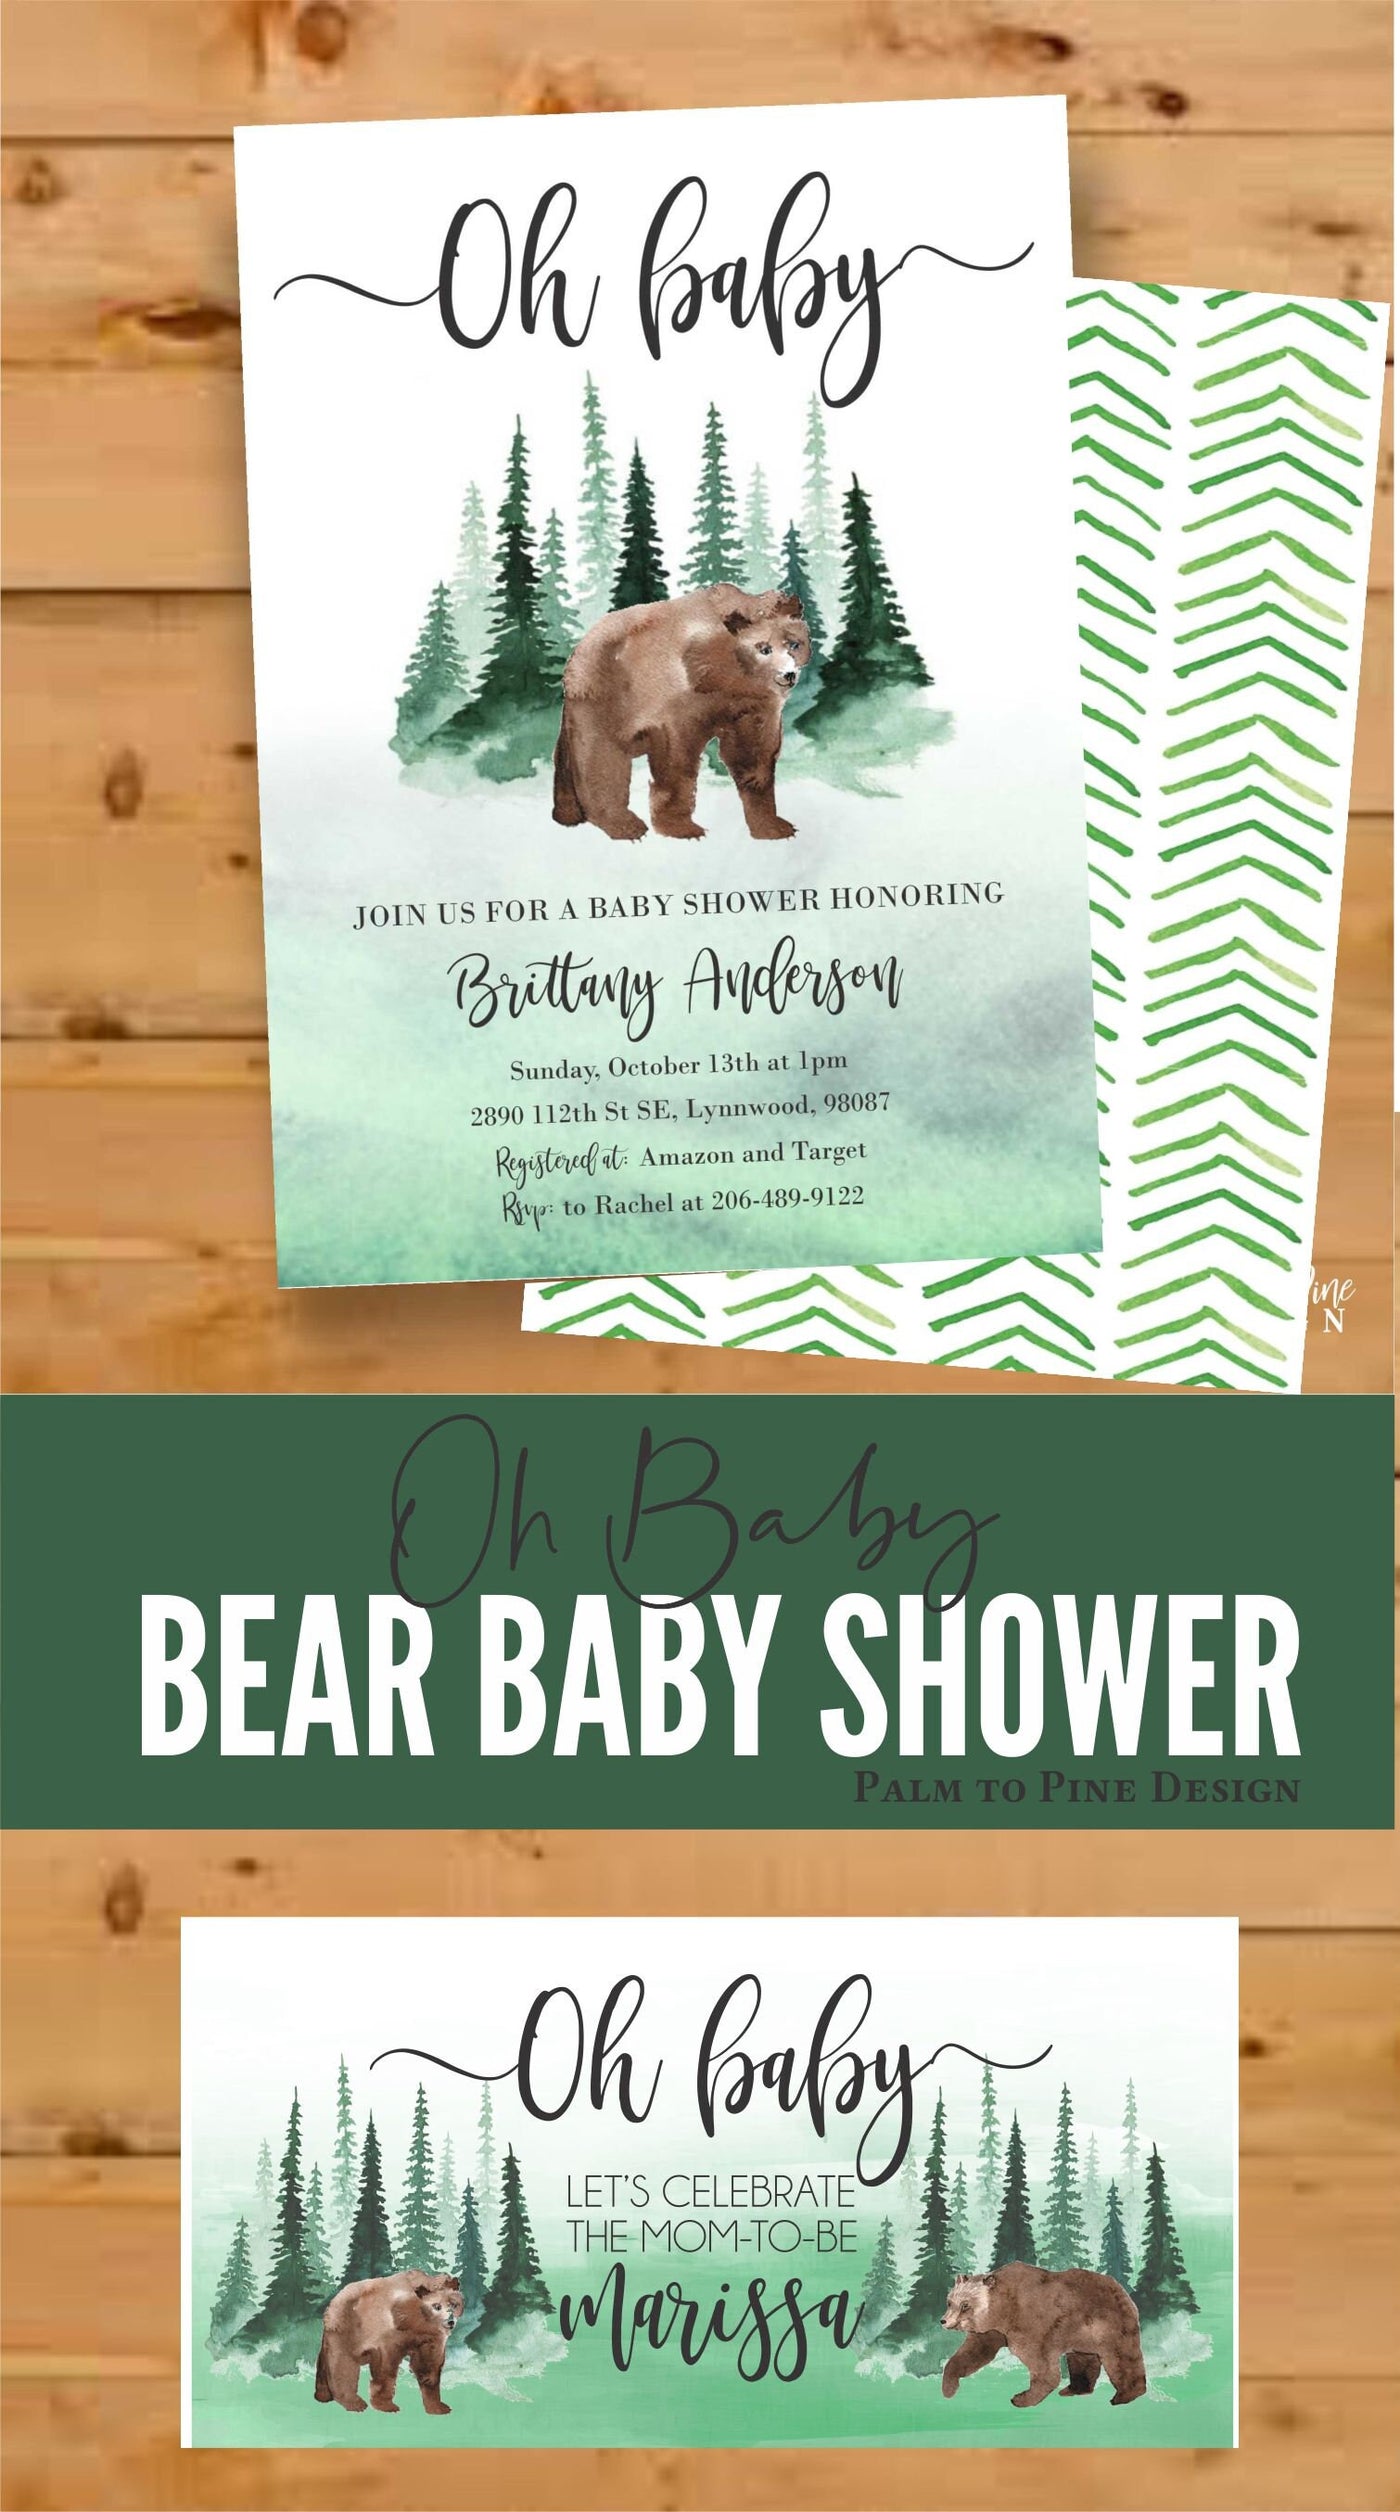 Baby Bear shower Banner, Bear Baby Shower Decor, Bear Baby Shower, Woodland baby shower banner, Forest baby shower decor, outdoor banner